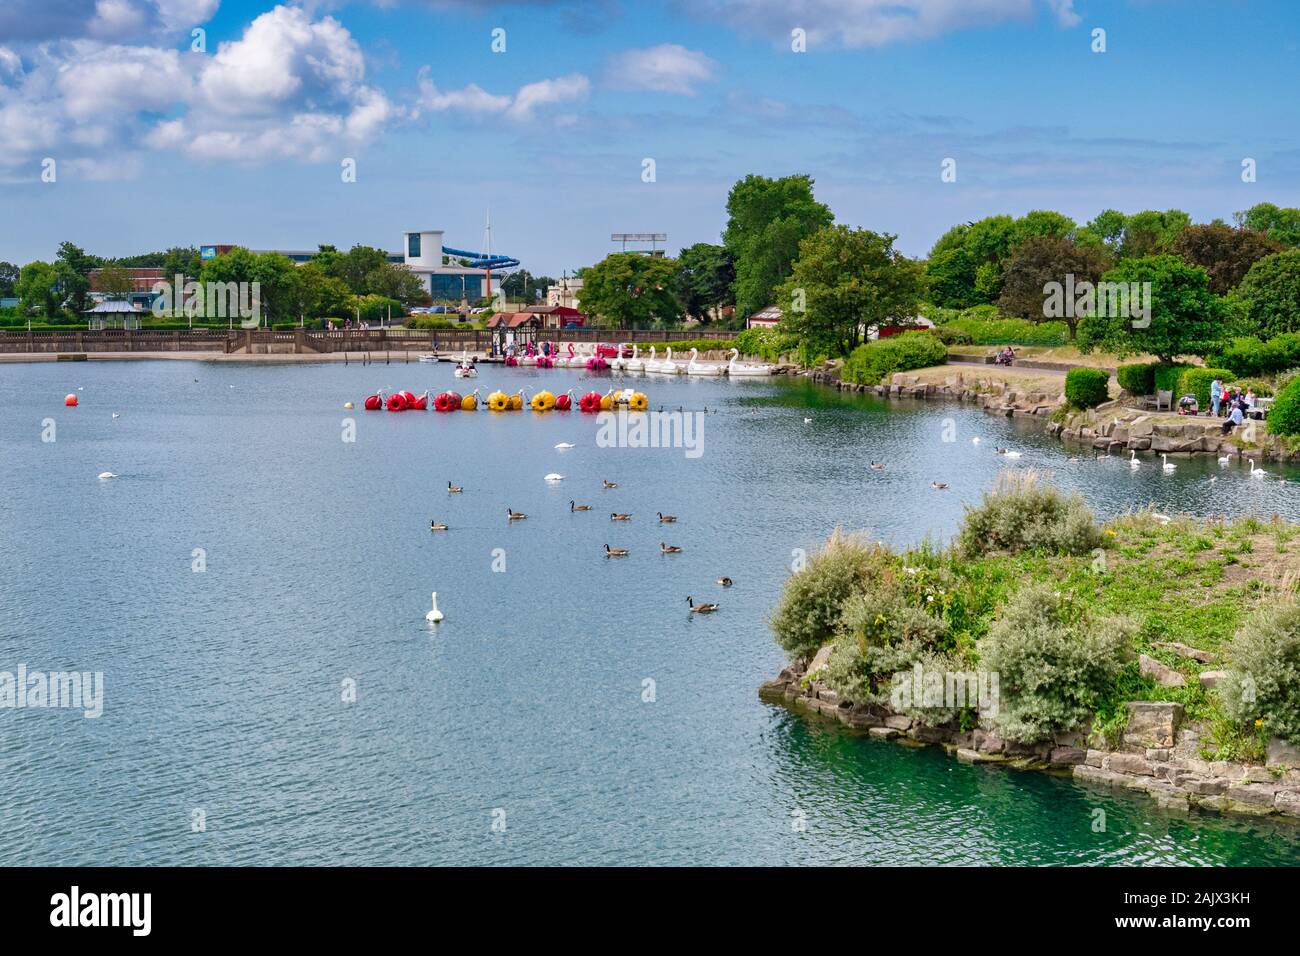 14 Juillet 2019 : Southport, Merseyside, Royaume-Uni - le lac marin, le lac de plaisance, avec les oies et les cygnes, les bateaux de plaisance, les vacanciers marchant dans le soleil Banque D'Images